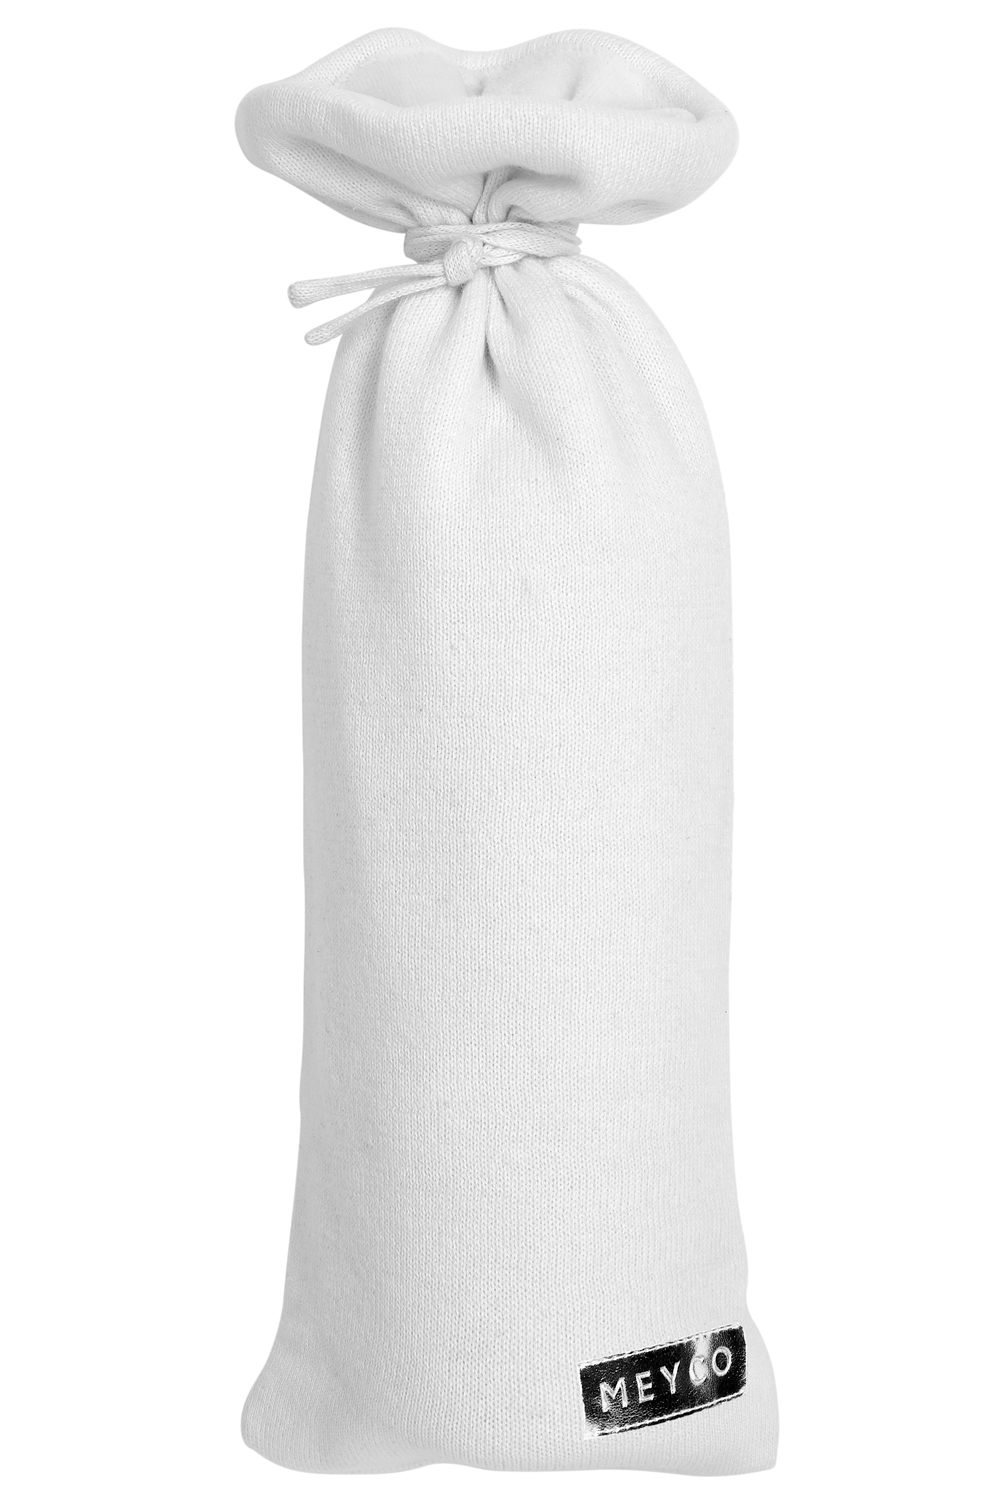 Kruikenzak Knit Basic - warm white